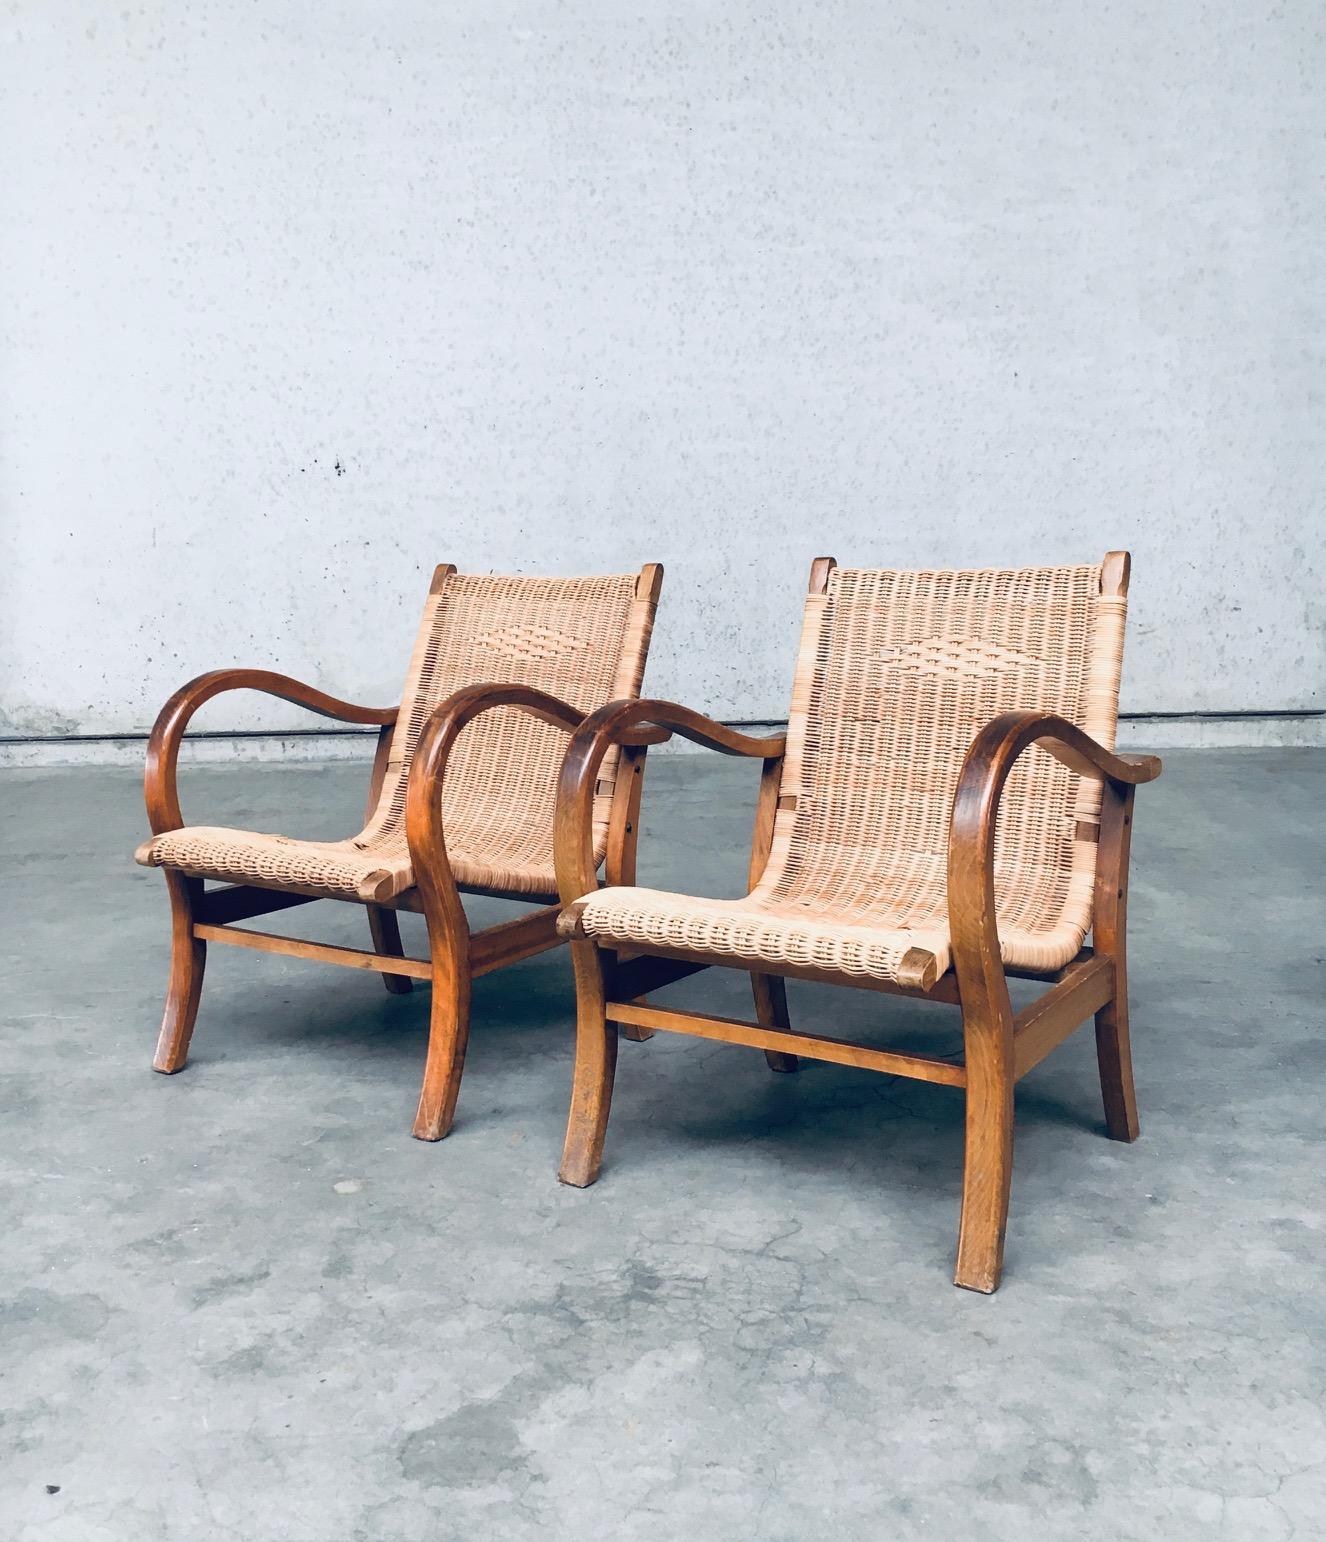 Chaise longue vintage au design Bauhaus, ensemble de 2. Conçue par Erich Dieckmann. Fabriqué dans les années 1930 en Allemagne. Structure en bois de Beeche cintré à la vapeur avec assise et dossier en rotin tressé. La canne présente quelques